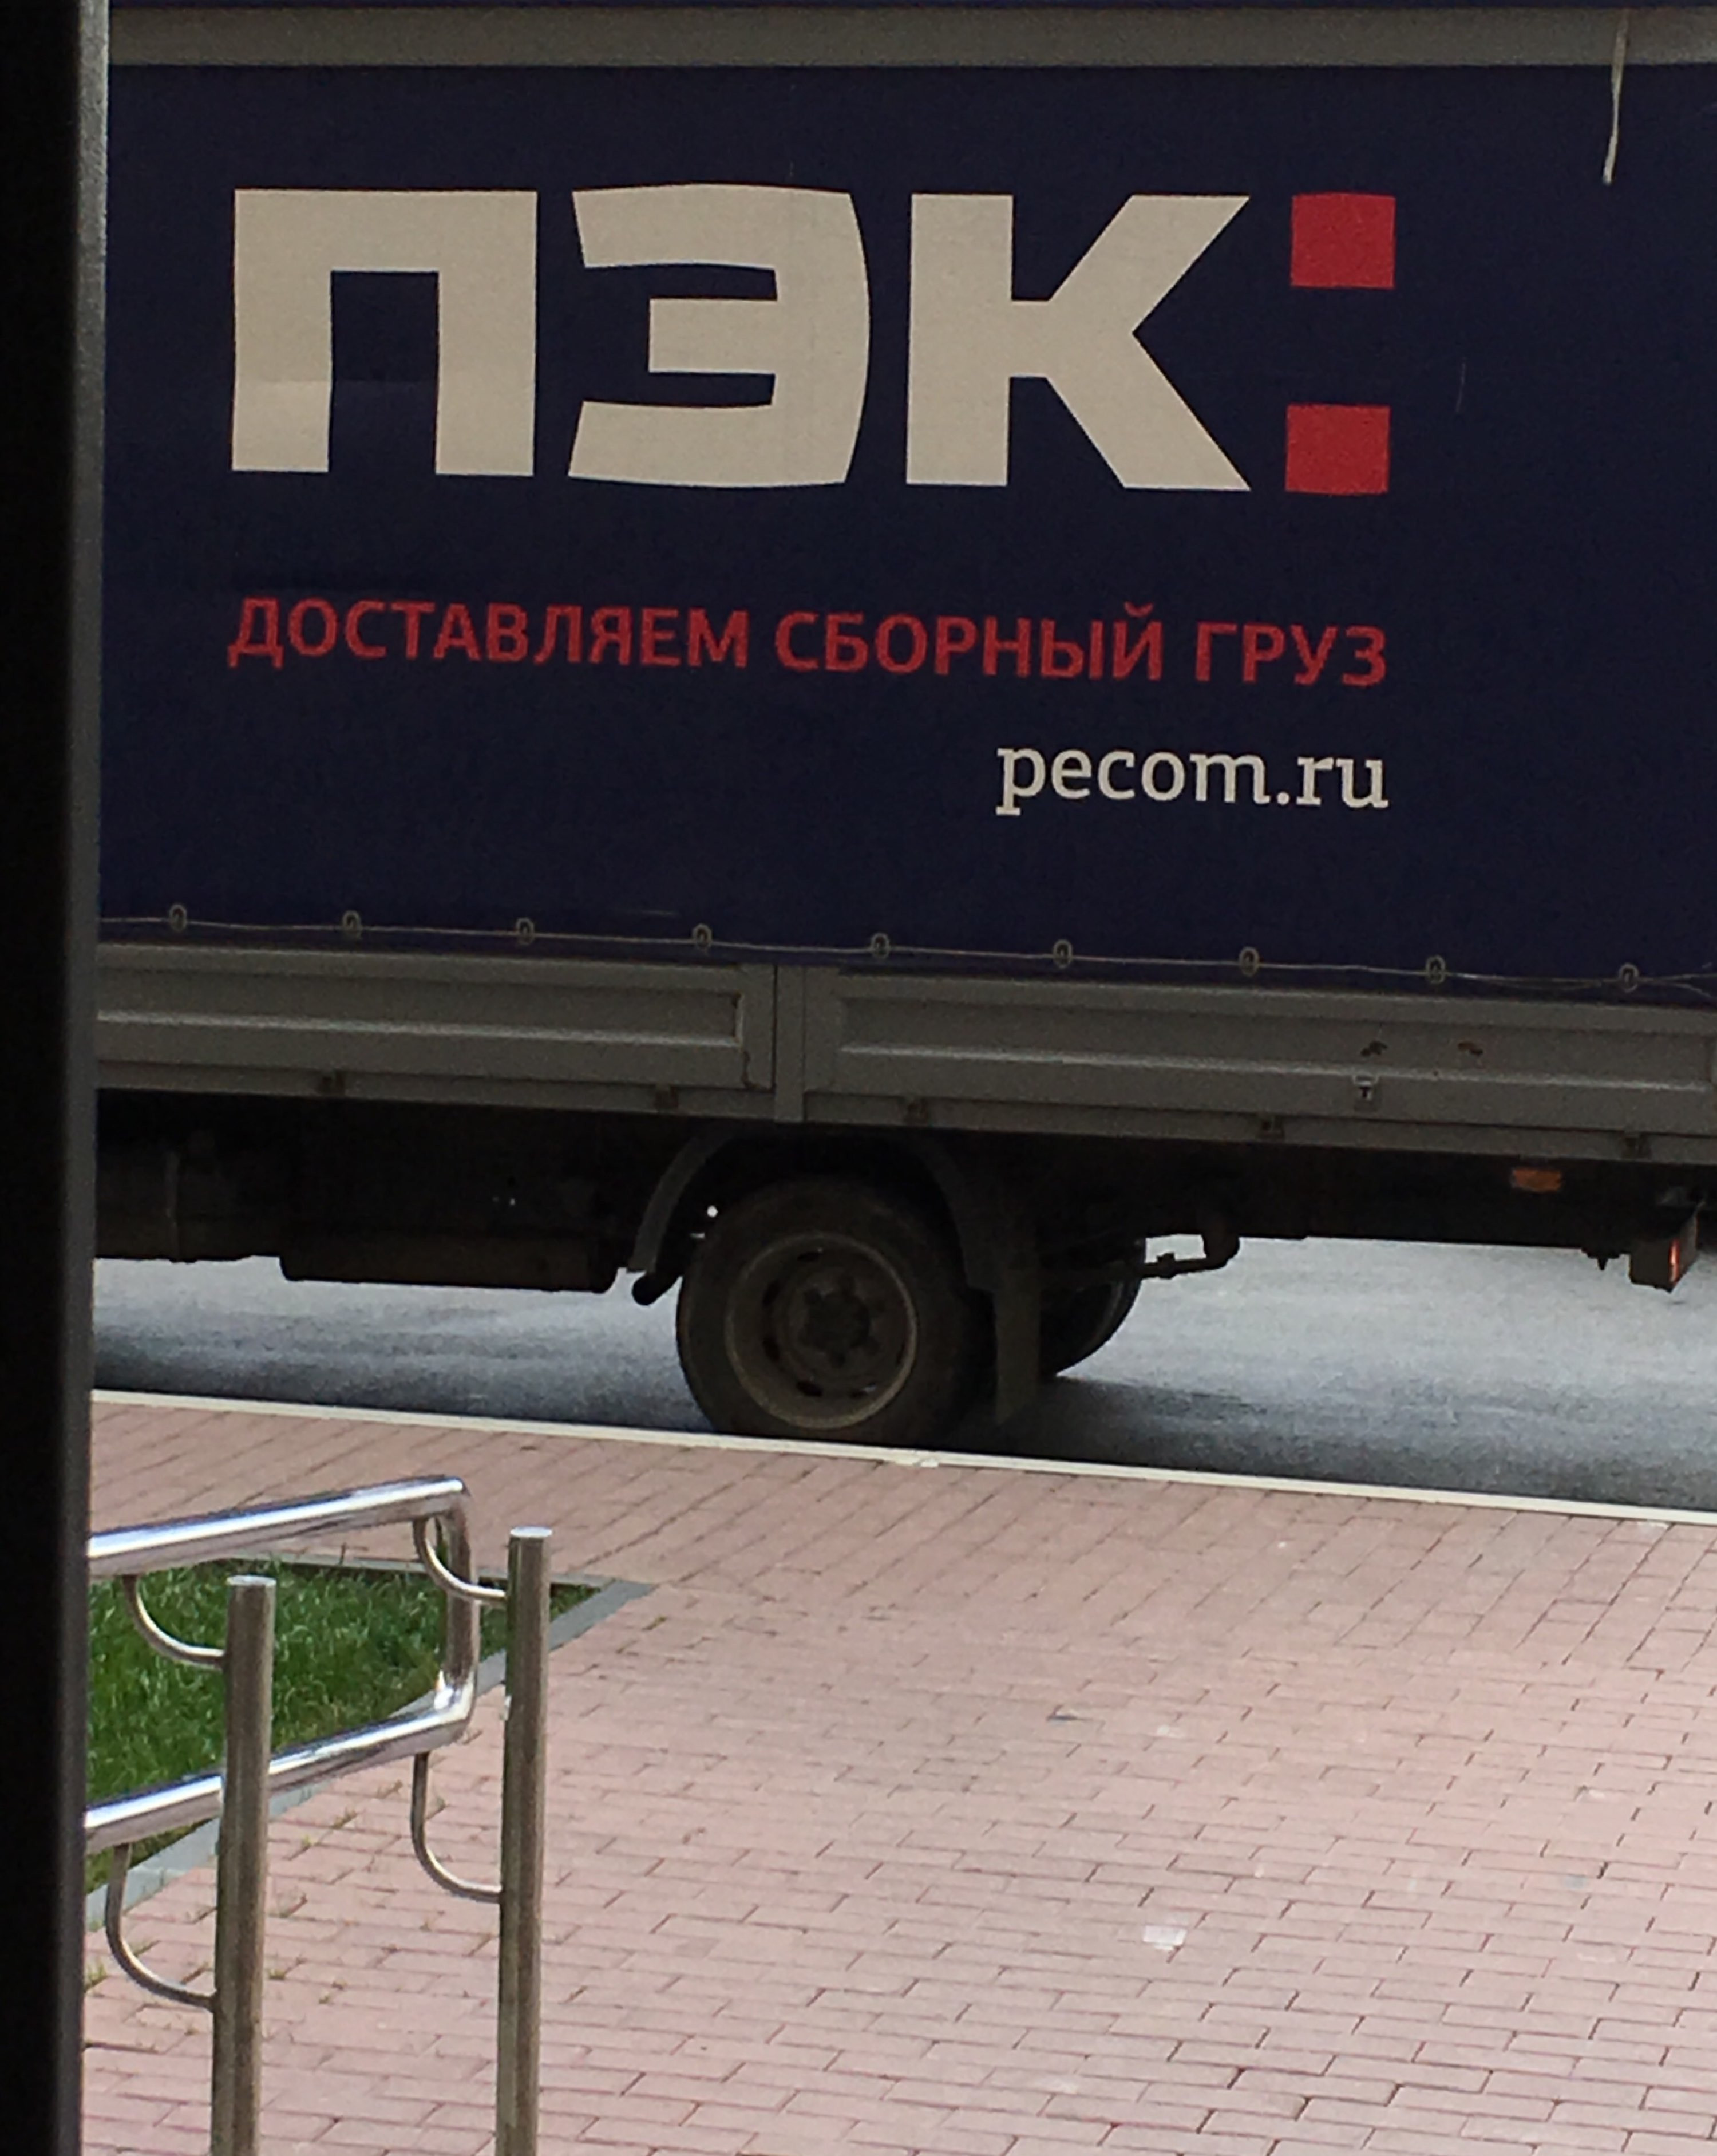 Пэк доставка номер. ПЭК. ПЭК доставляем сборный груз. Газель ПЭК. ПЭК транспортная компания Екатеринбург.